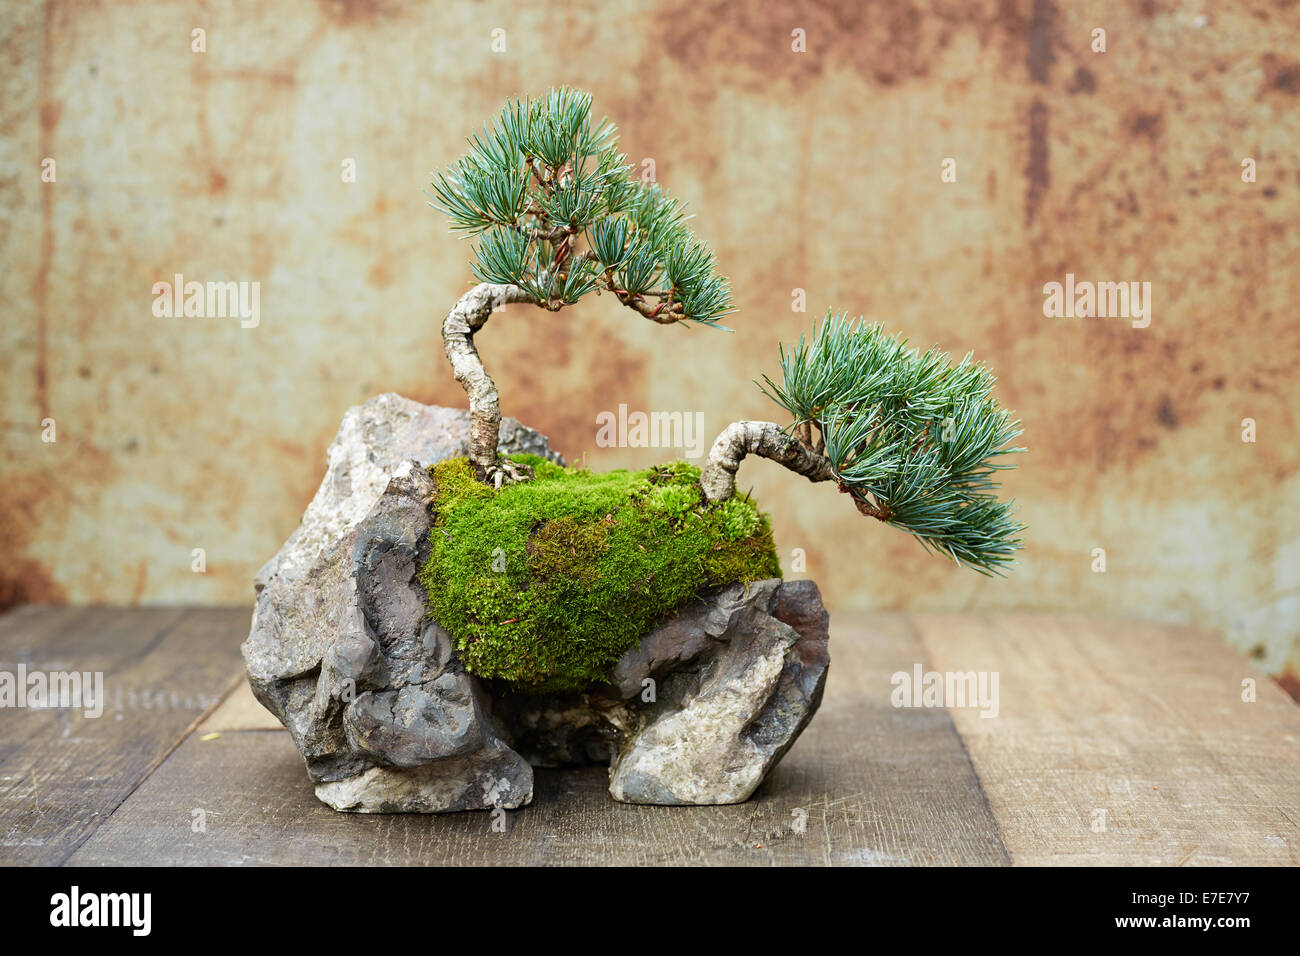 Bonsai, siembra de rock - pino de cinco agujas Foto de stock